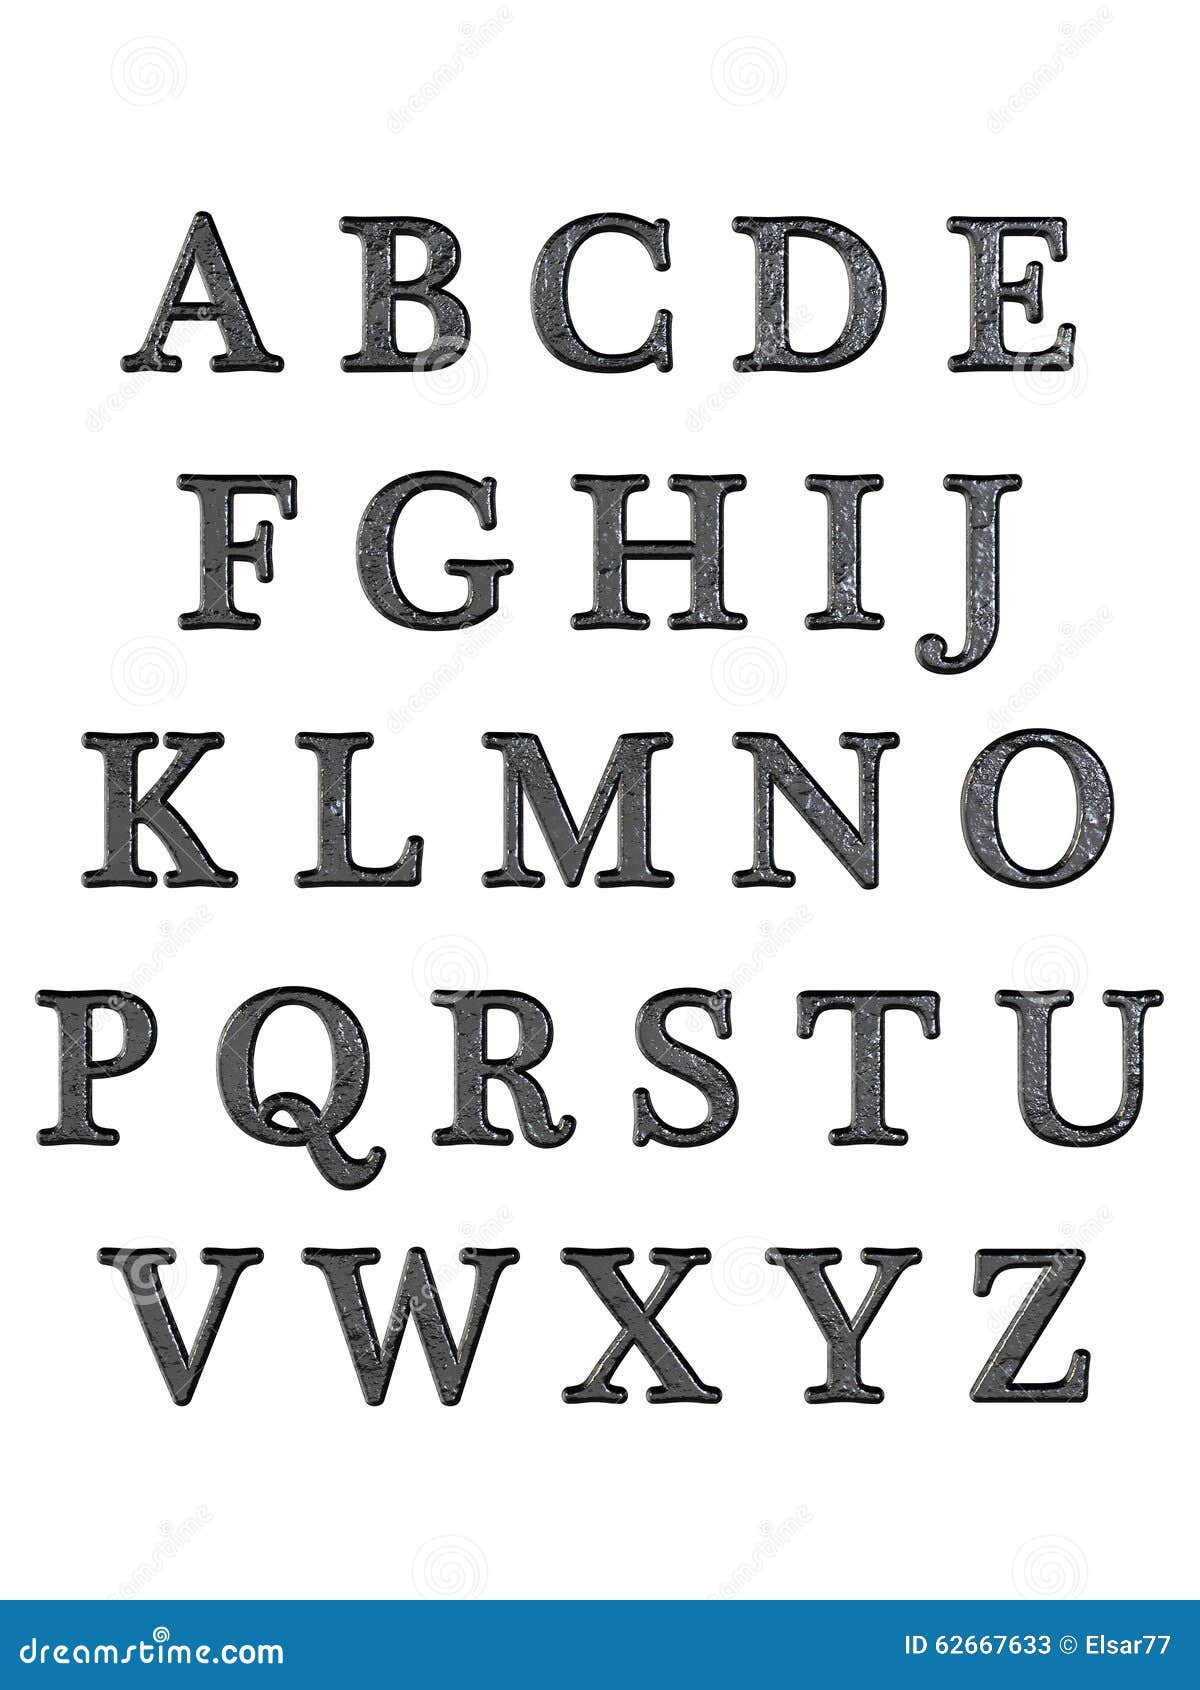 Letras De Abecedario En 3d El alfabeto letra 3D stock de ilustración. Ilustración de hardware -  62667633